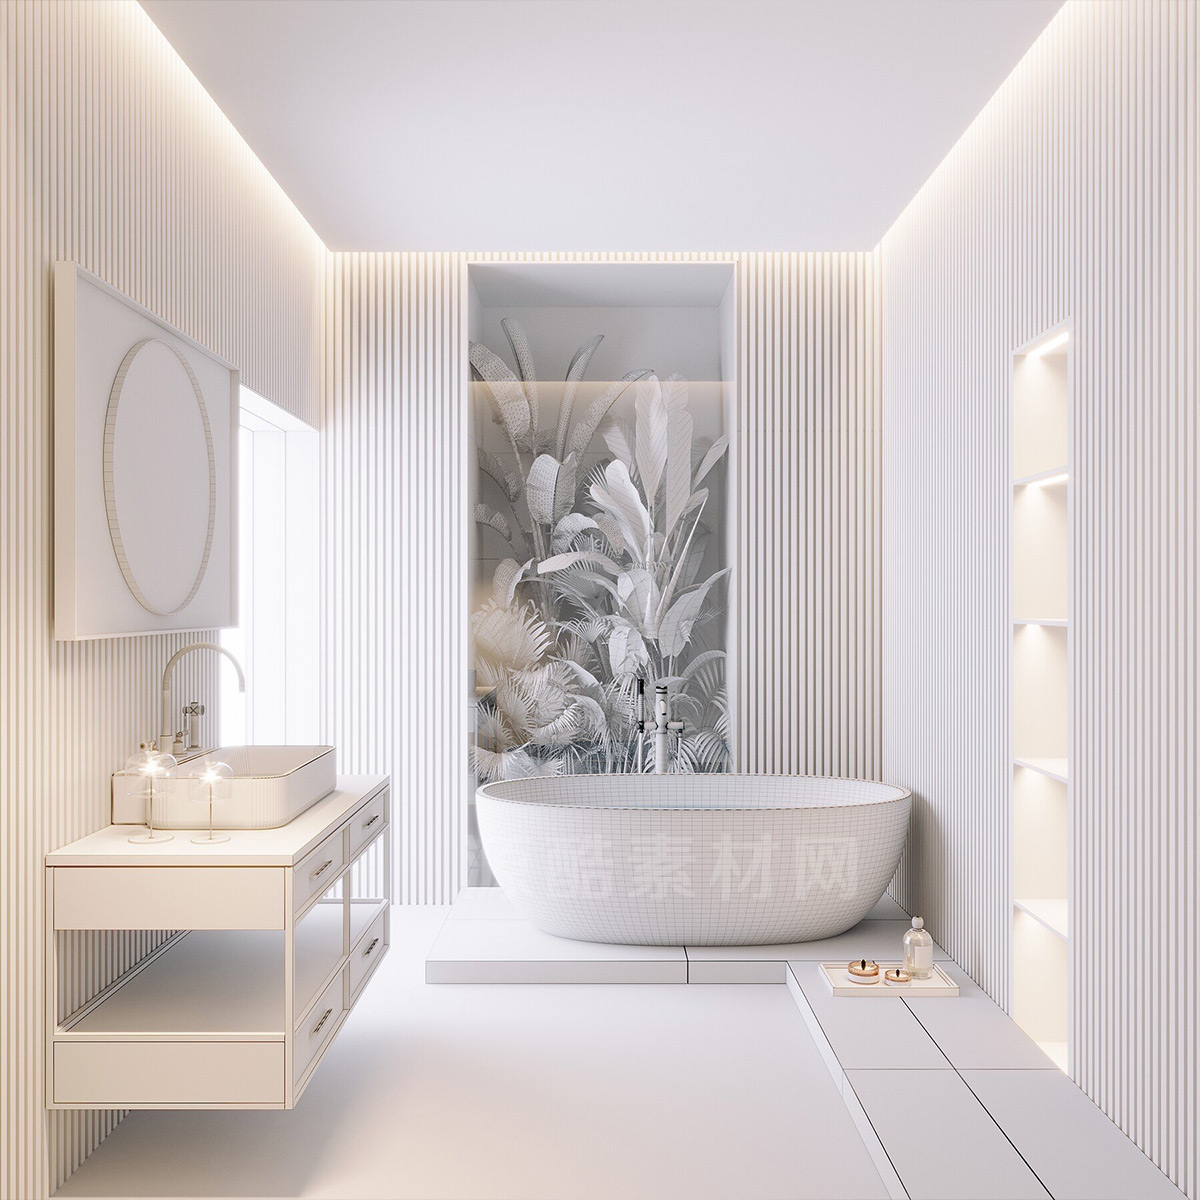 C4D模型-洗手间场景模型浴室场景模型浴缸模型